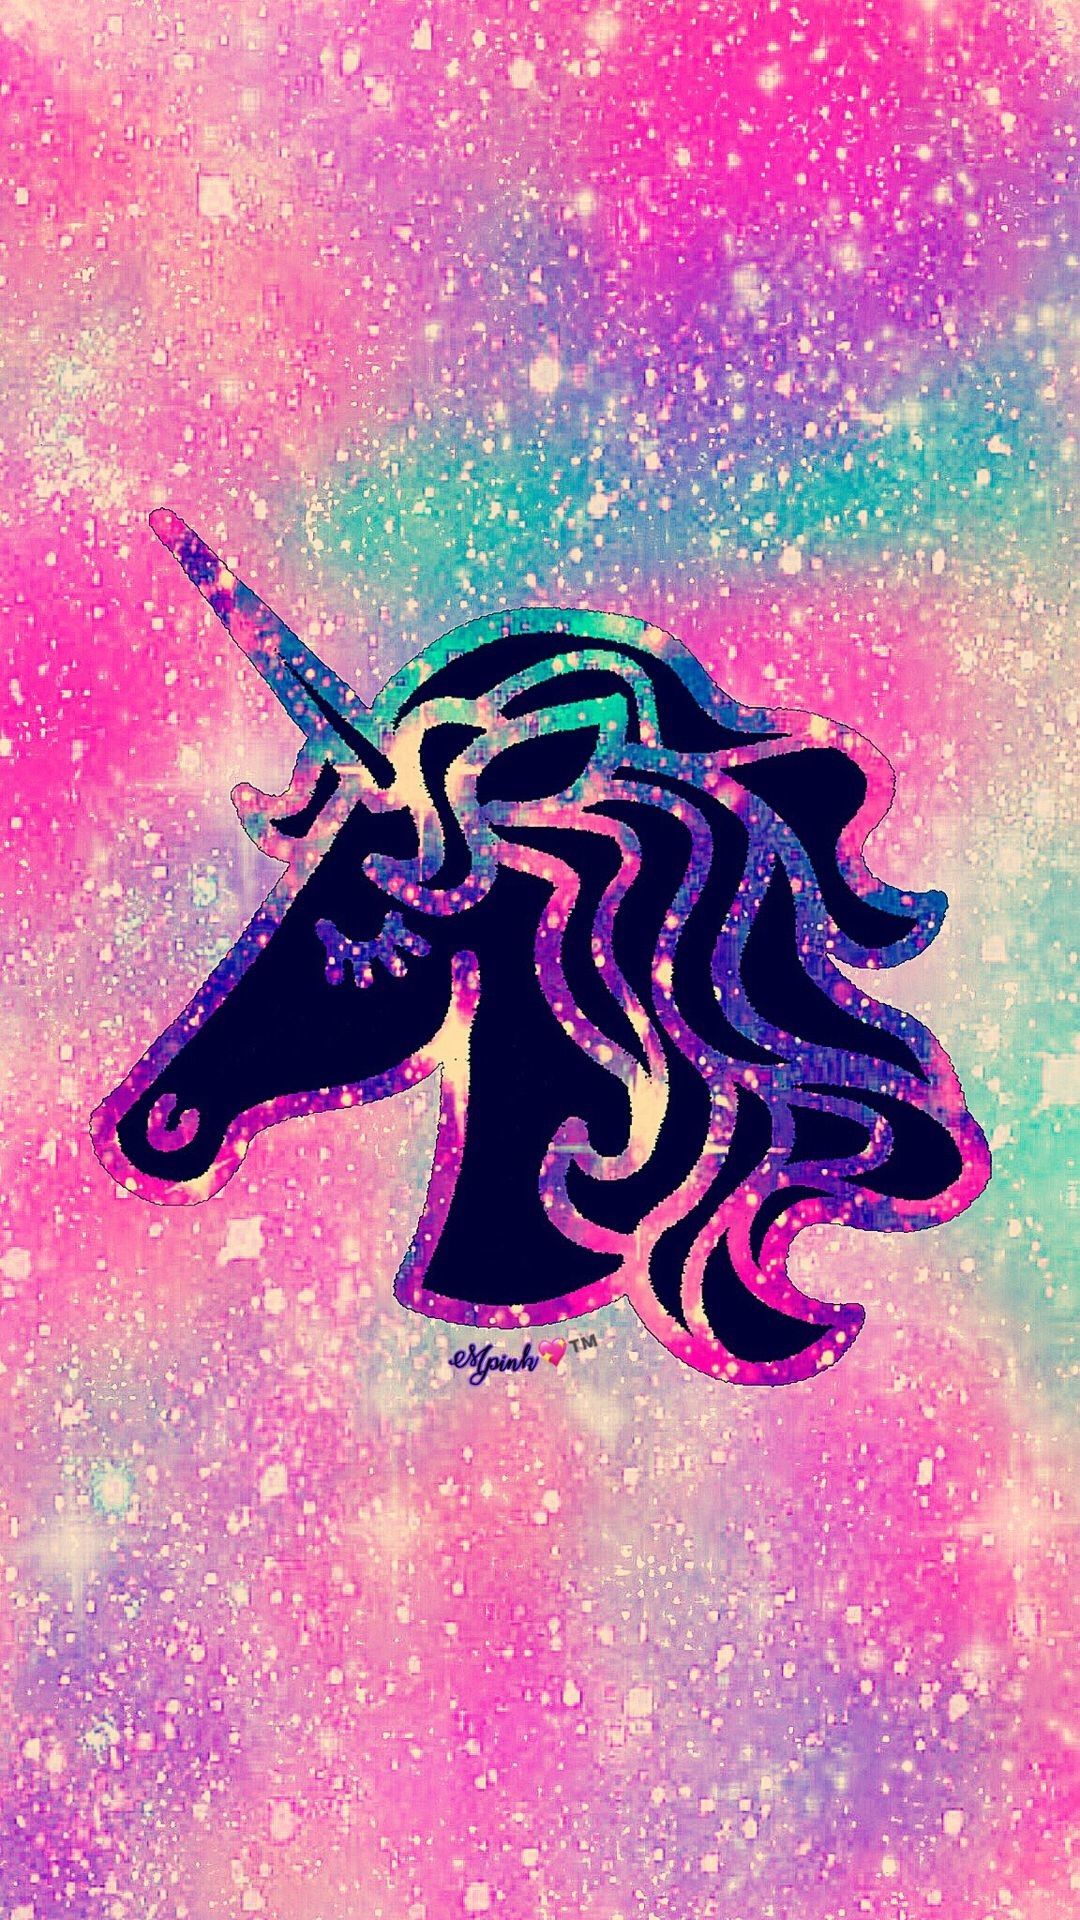 Unicorn silhouette - Wallpaper